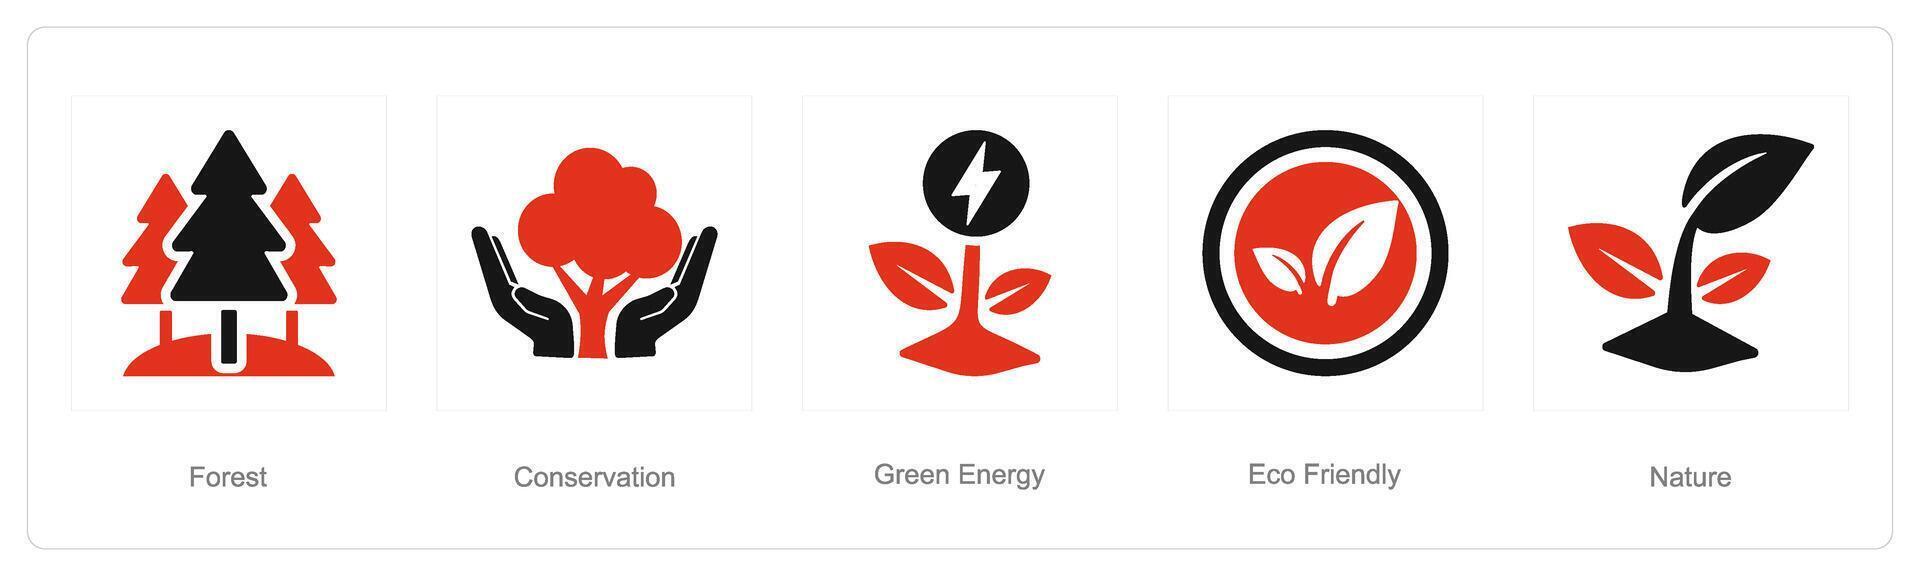 uma conjunto do 5 ecologia ícones Como floresta, conservação, verde energia vetor